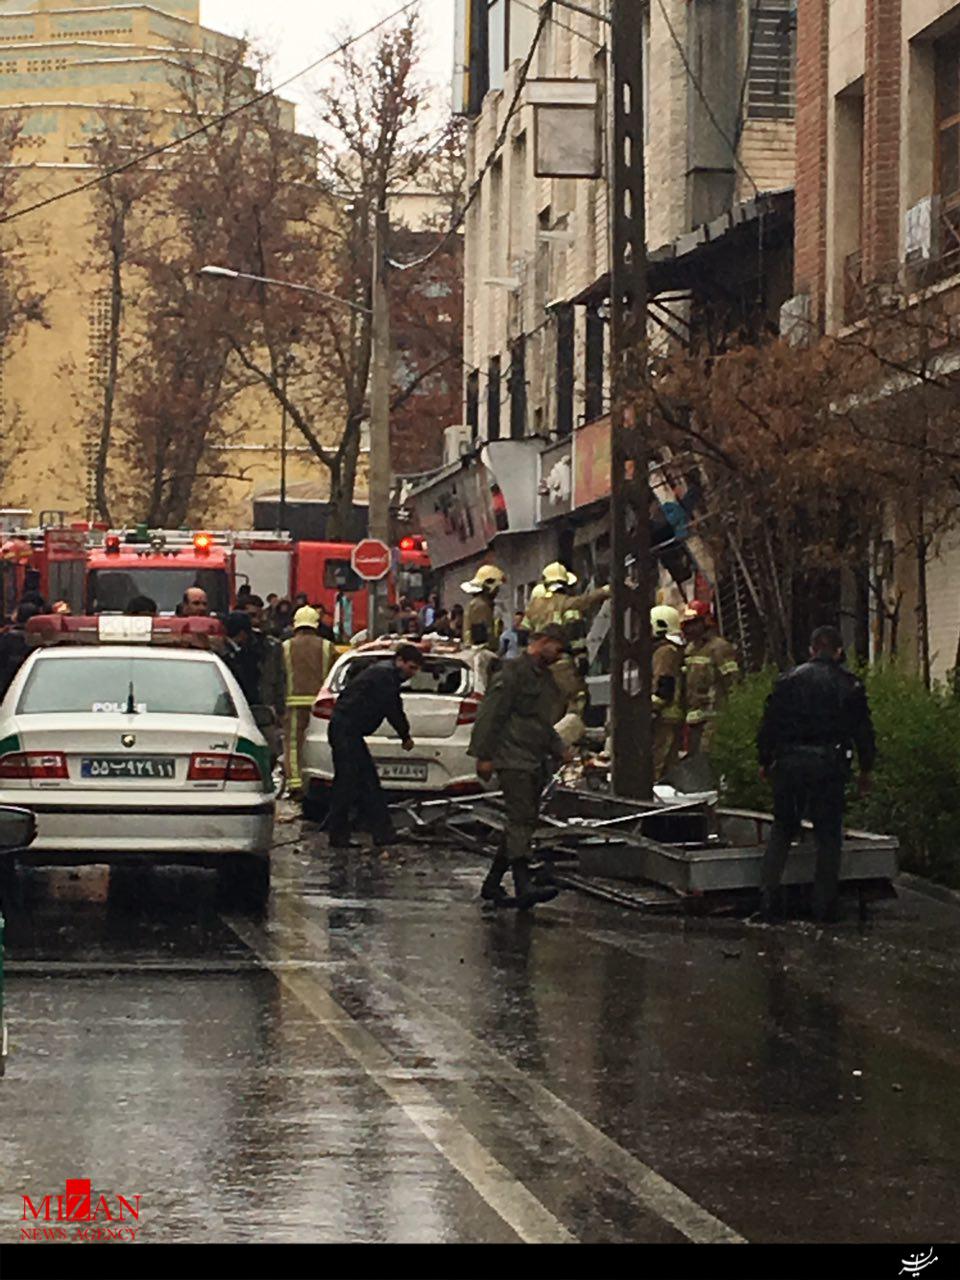 انفجار گاز در یک سوپر مارکت در خیابان میردماد/سه زن و یک مرد مجروح شدند/ امدادرسانی همچنان ادامه دارد+تصاویر